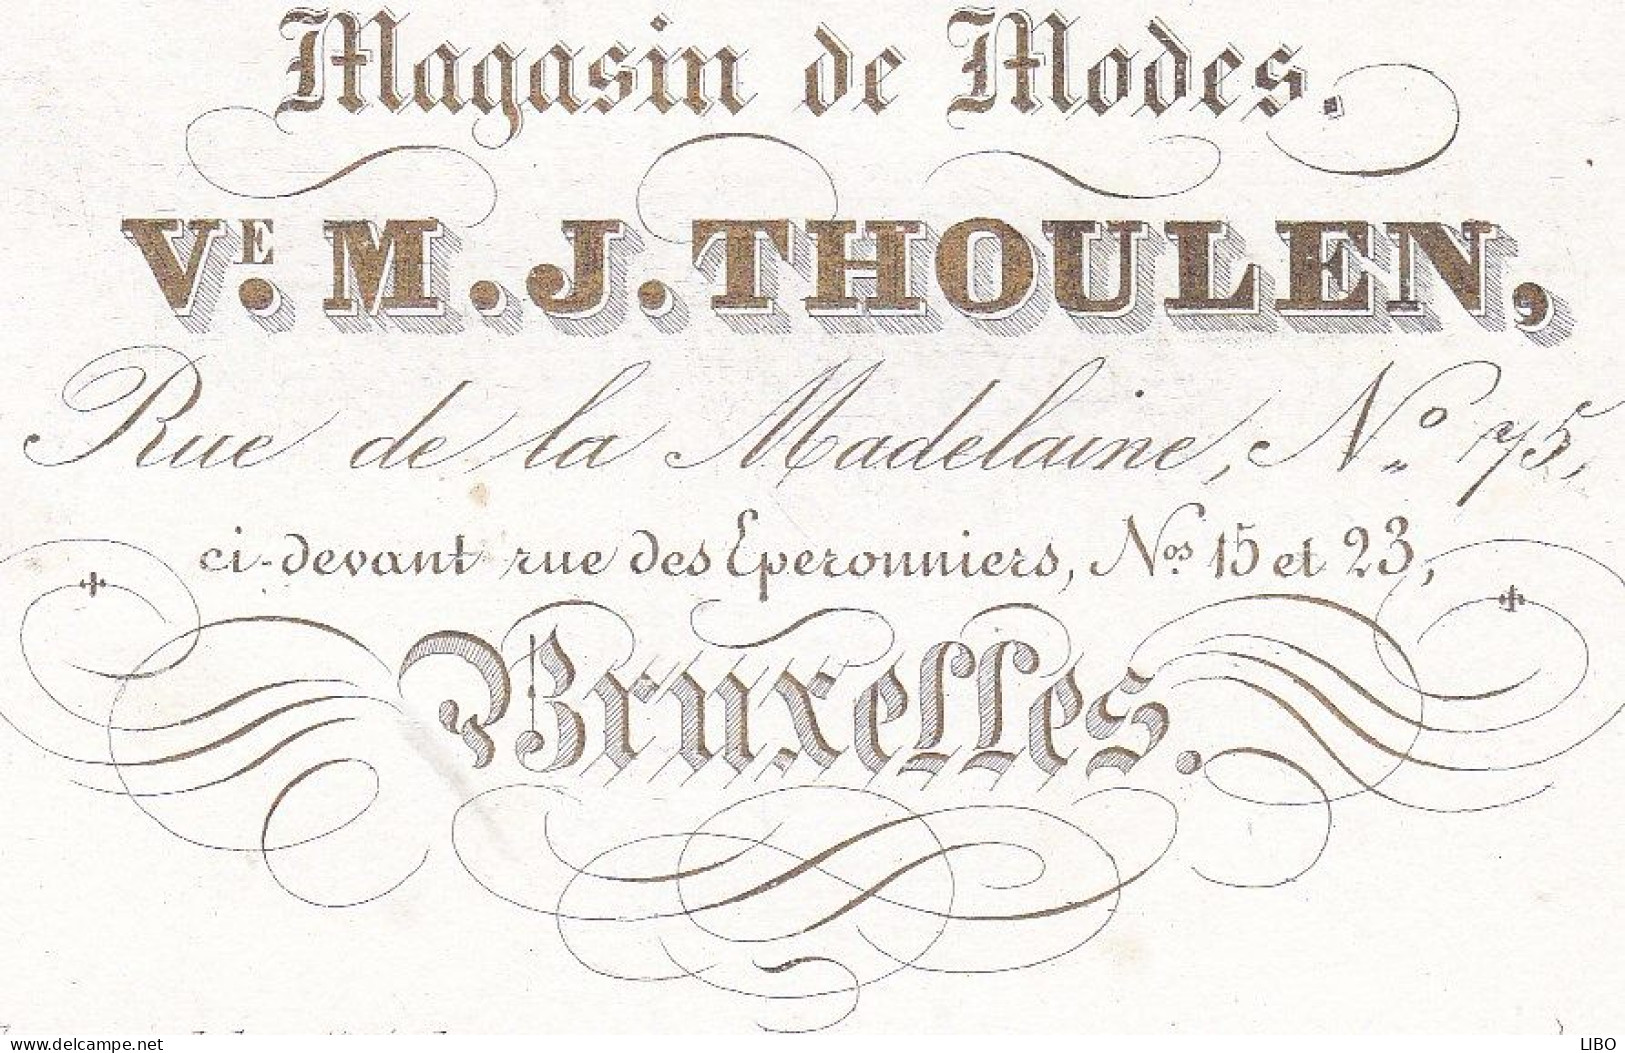 BRUXELLES Magasin De Modes V. THOULEN Rue De La Madeleine 75 Carte De Visite Porcelaine C. 1860 - Tarjetas De Visita